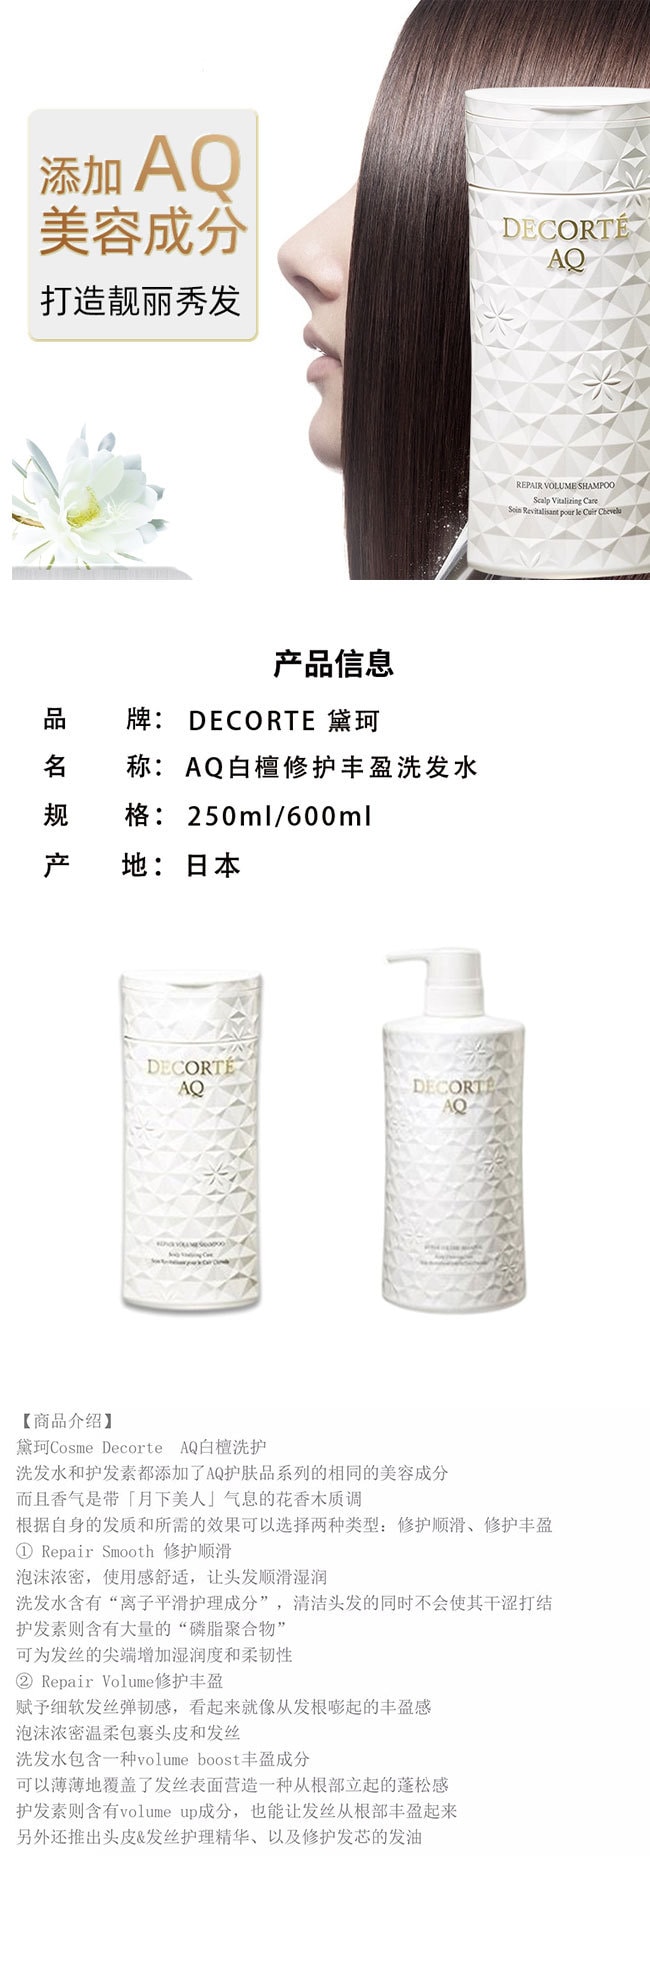 【日本直效郵件】COSME DECORTE黛珂 AQ 高保濕柔順修護洗髮精 250ml